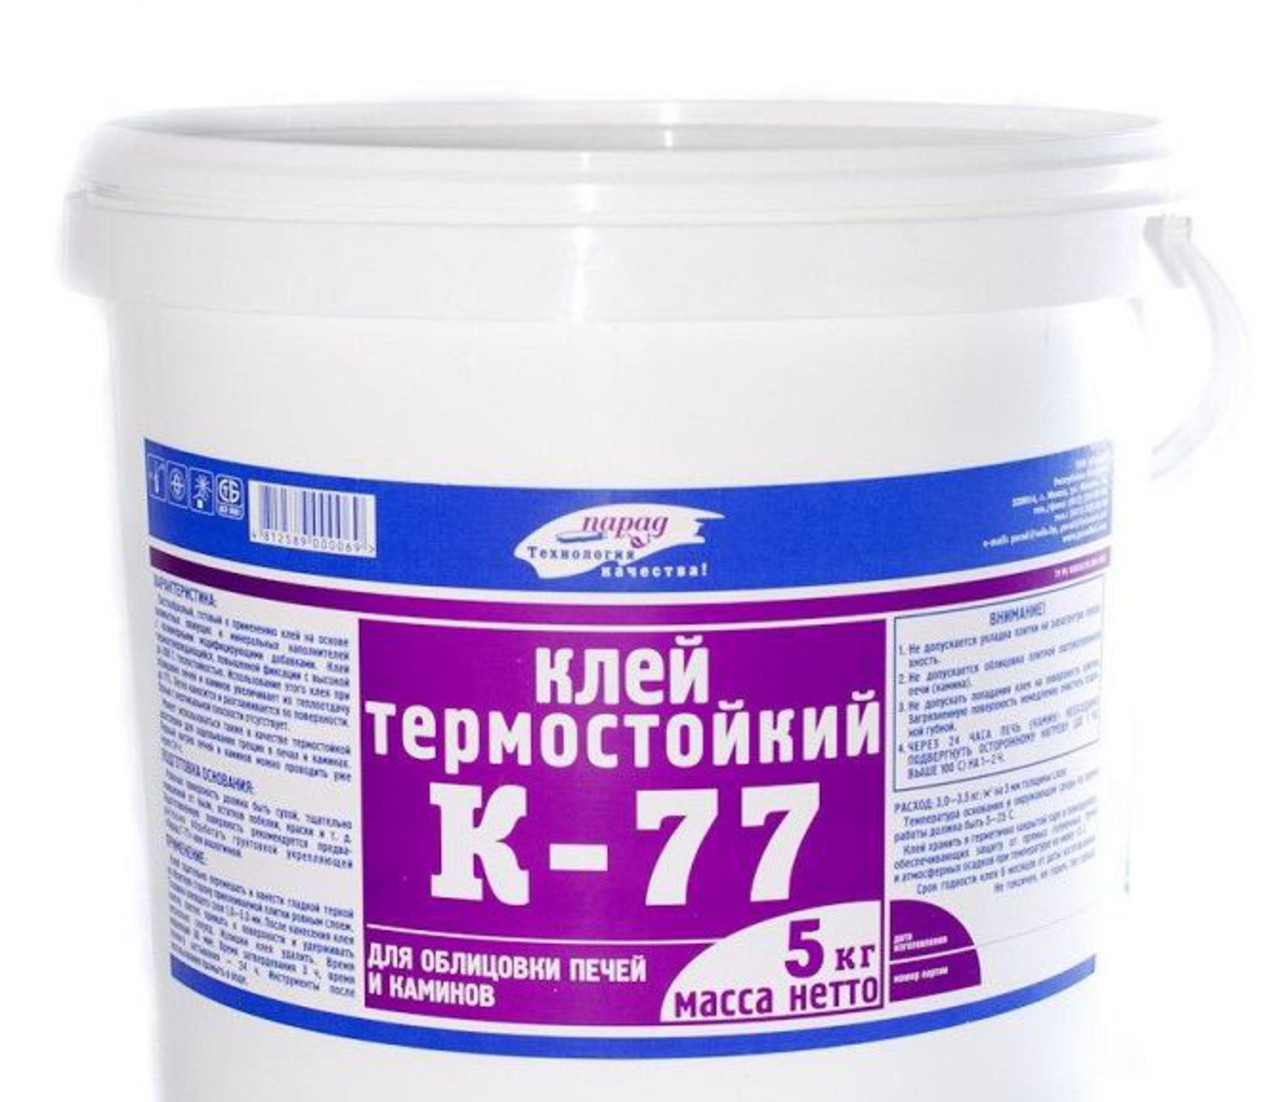 К-77 термостойкий клей, 5 кг